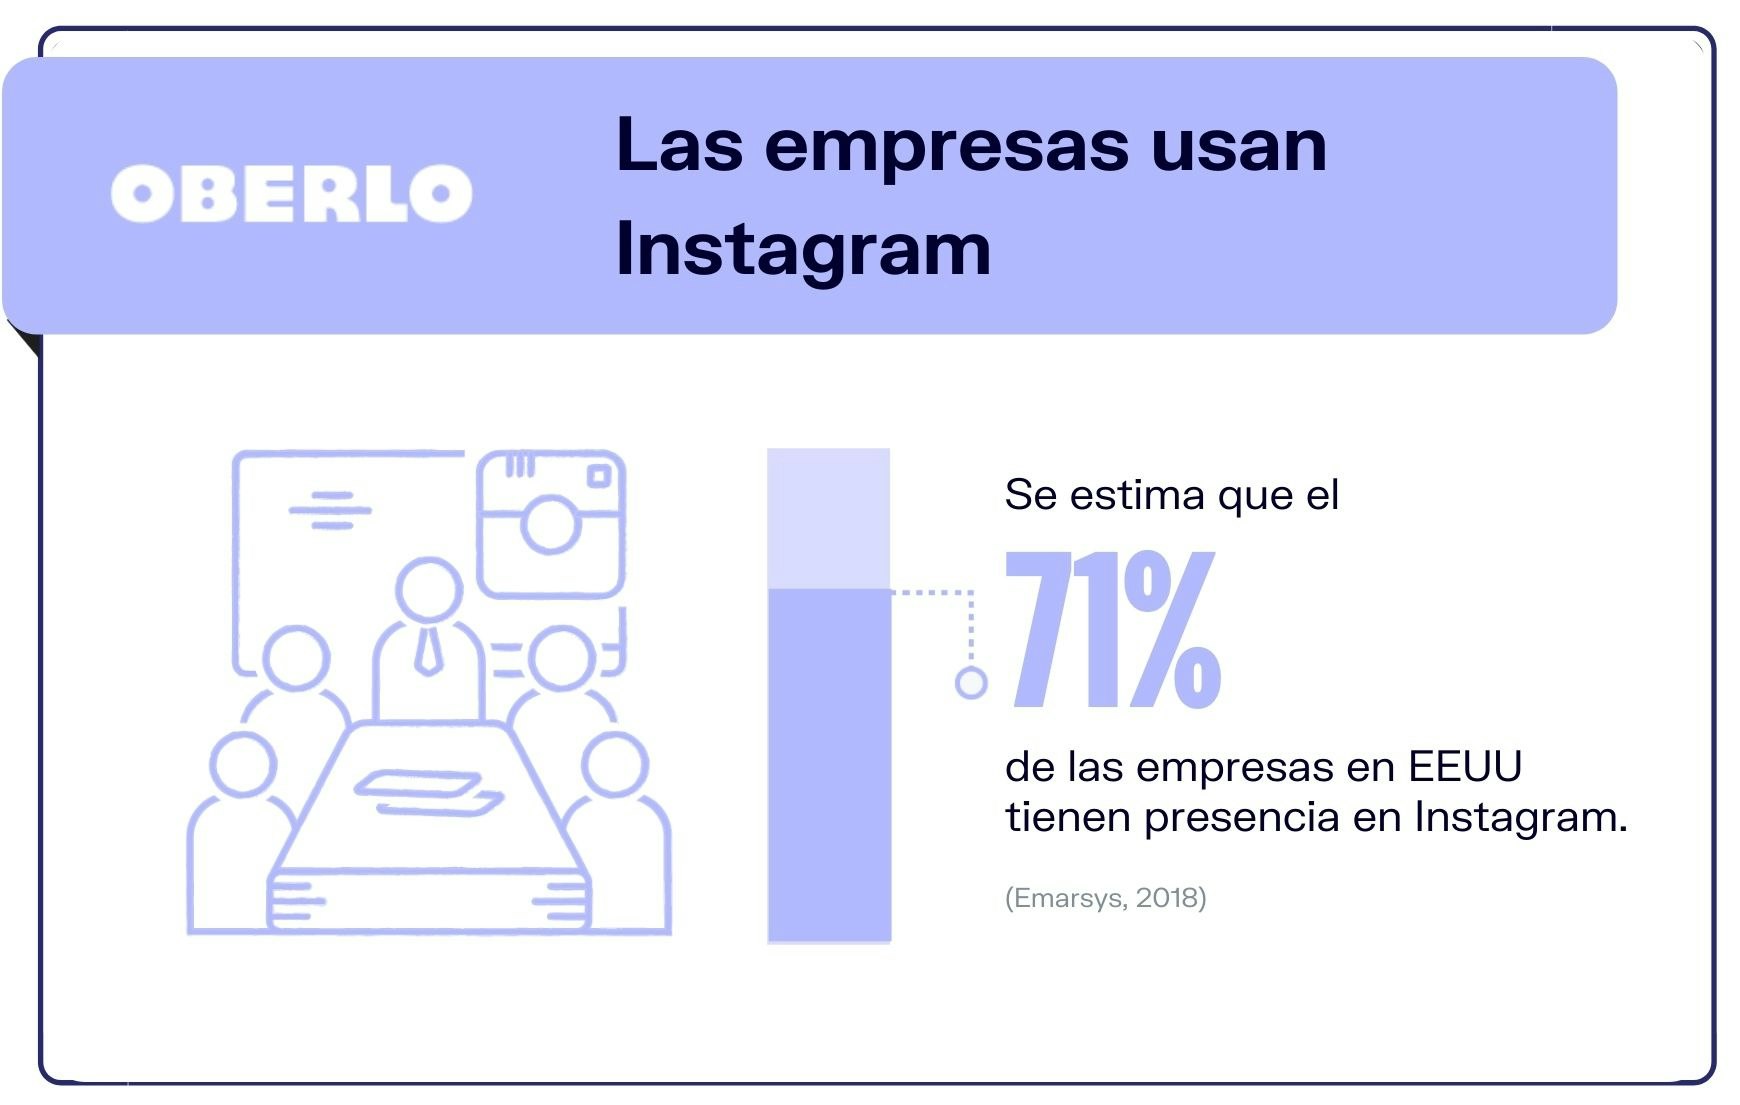 datos de instagram 2020 para empresas